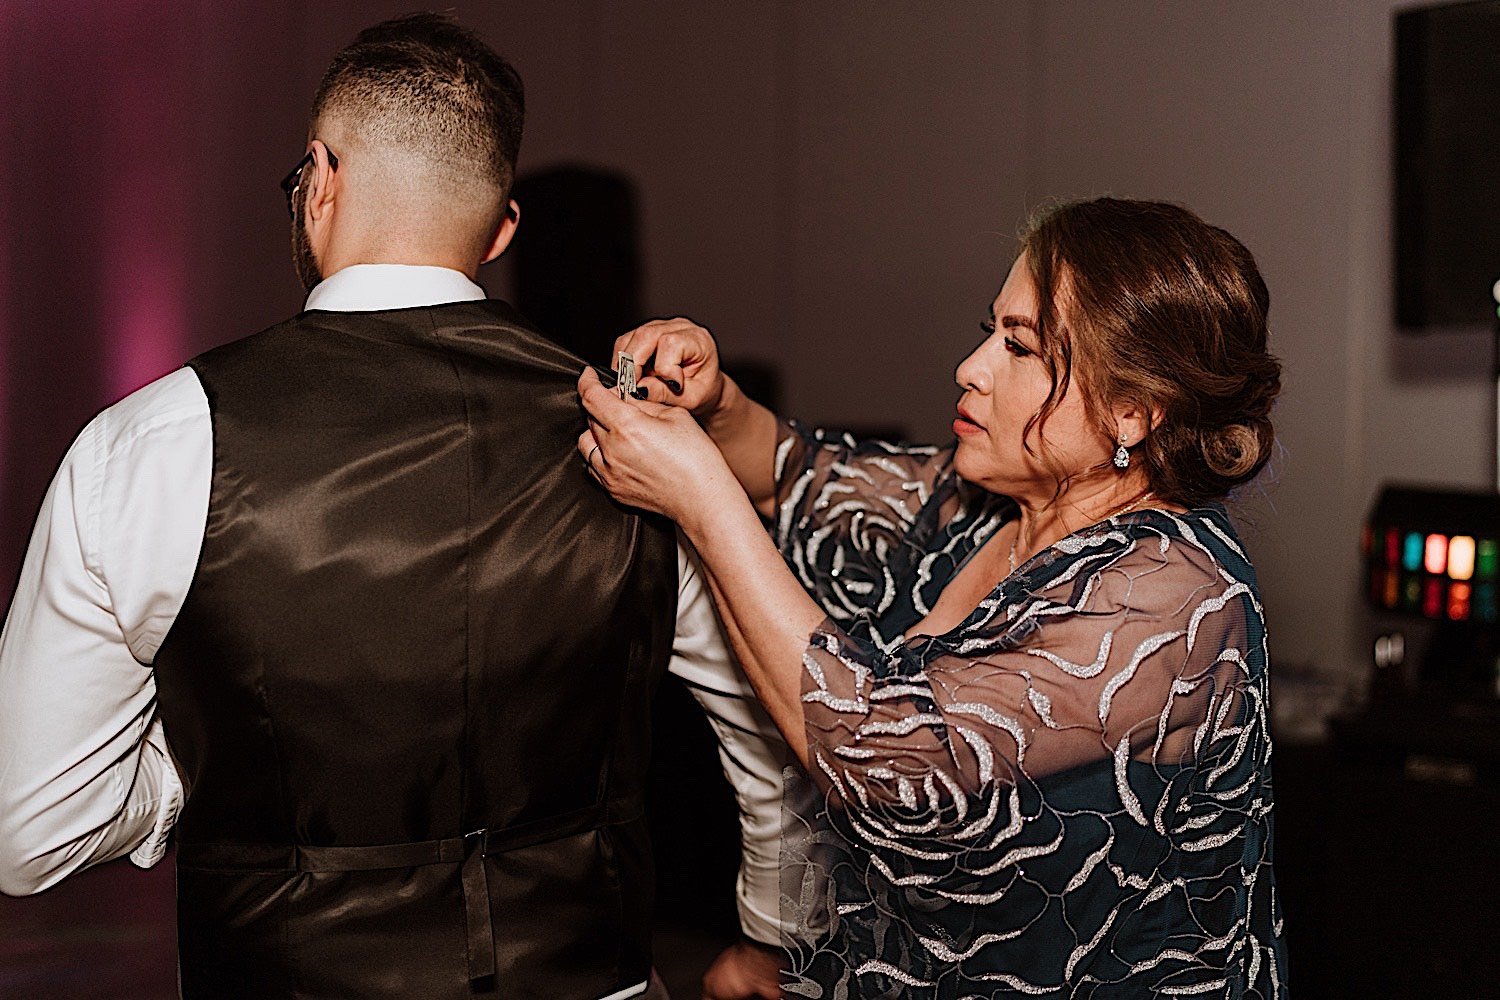 Mother fixes grooms vest on dance floor during wedding reception